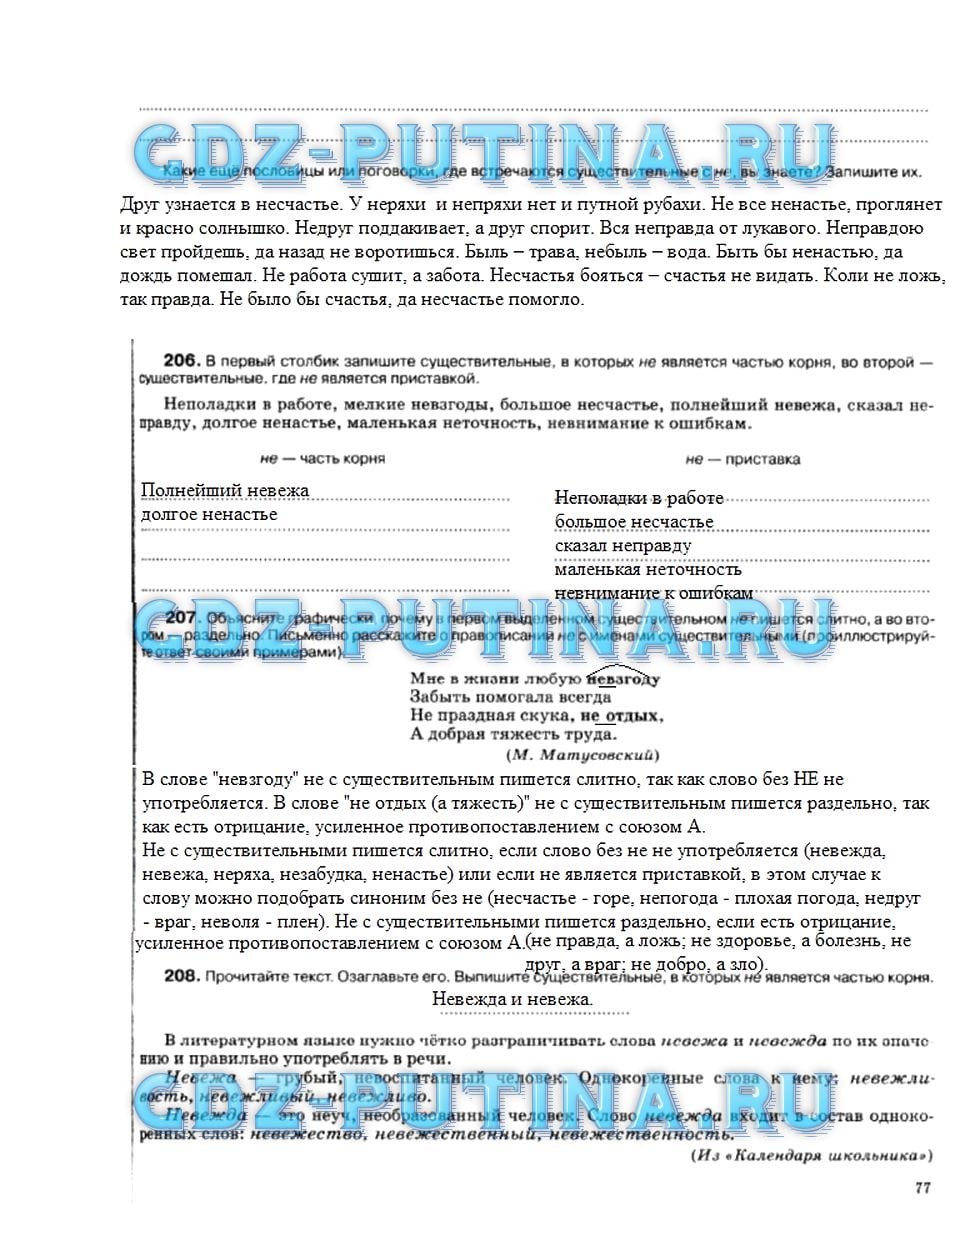 гдз 5 класс рабочая тетрадь страница 77 русский язык Ларионова